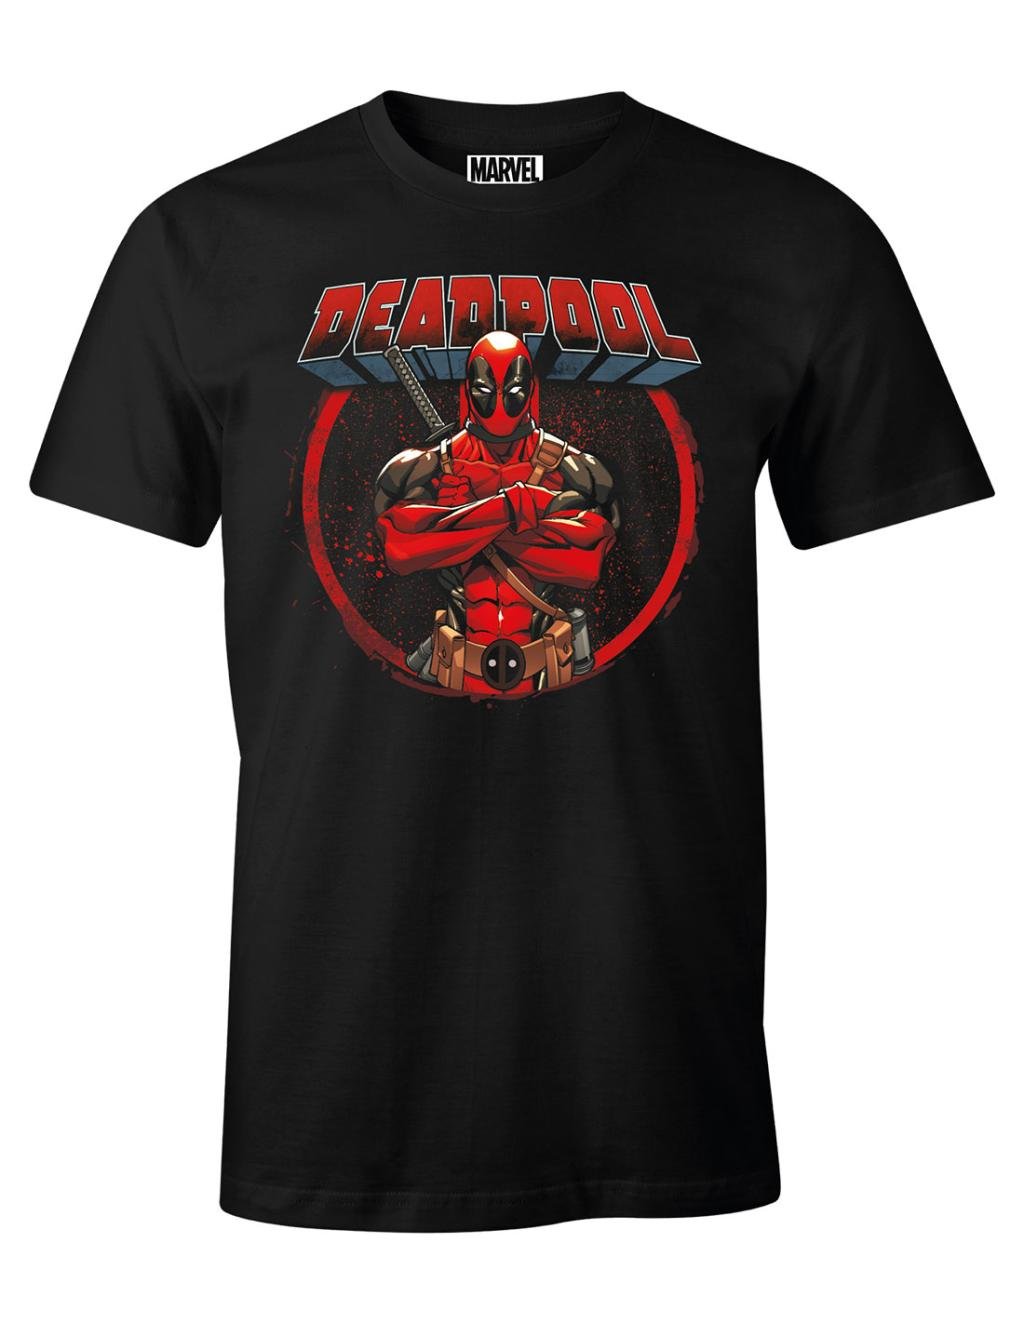 MARVEL - Deadpool - T-Shirt (S)